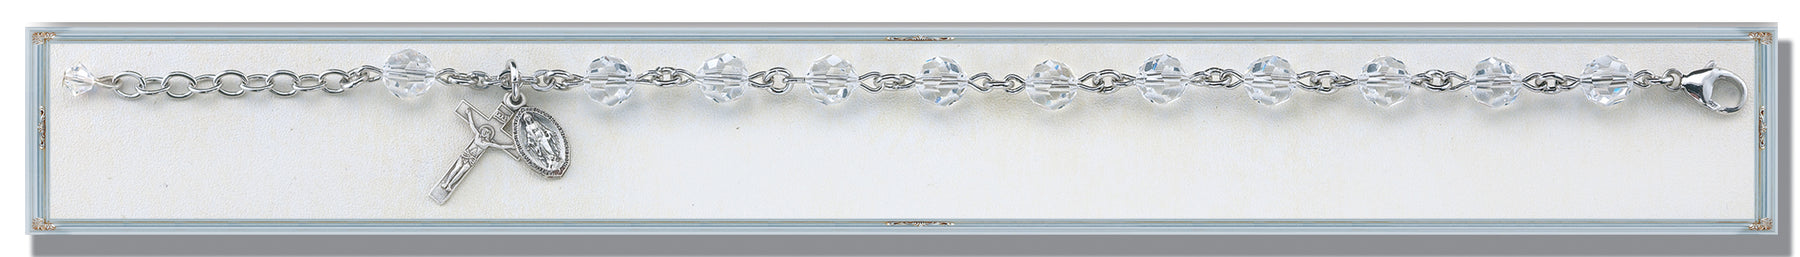 Clear Crystal Round Faceted Swarovski Crystal Bracelet